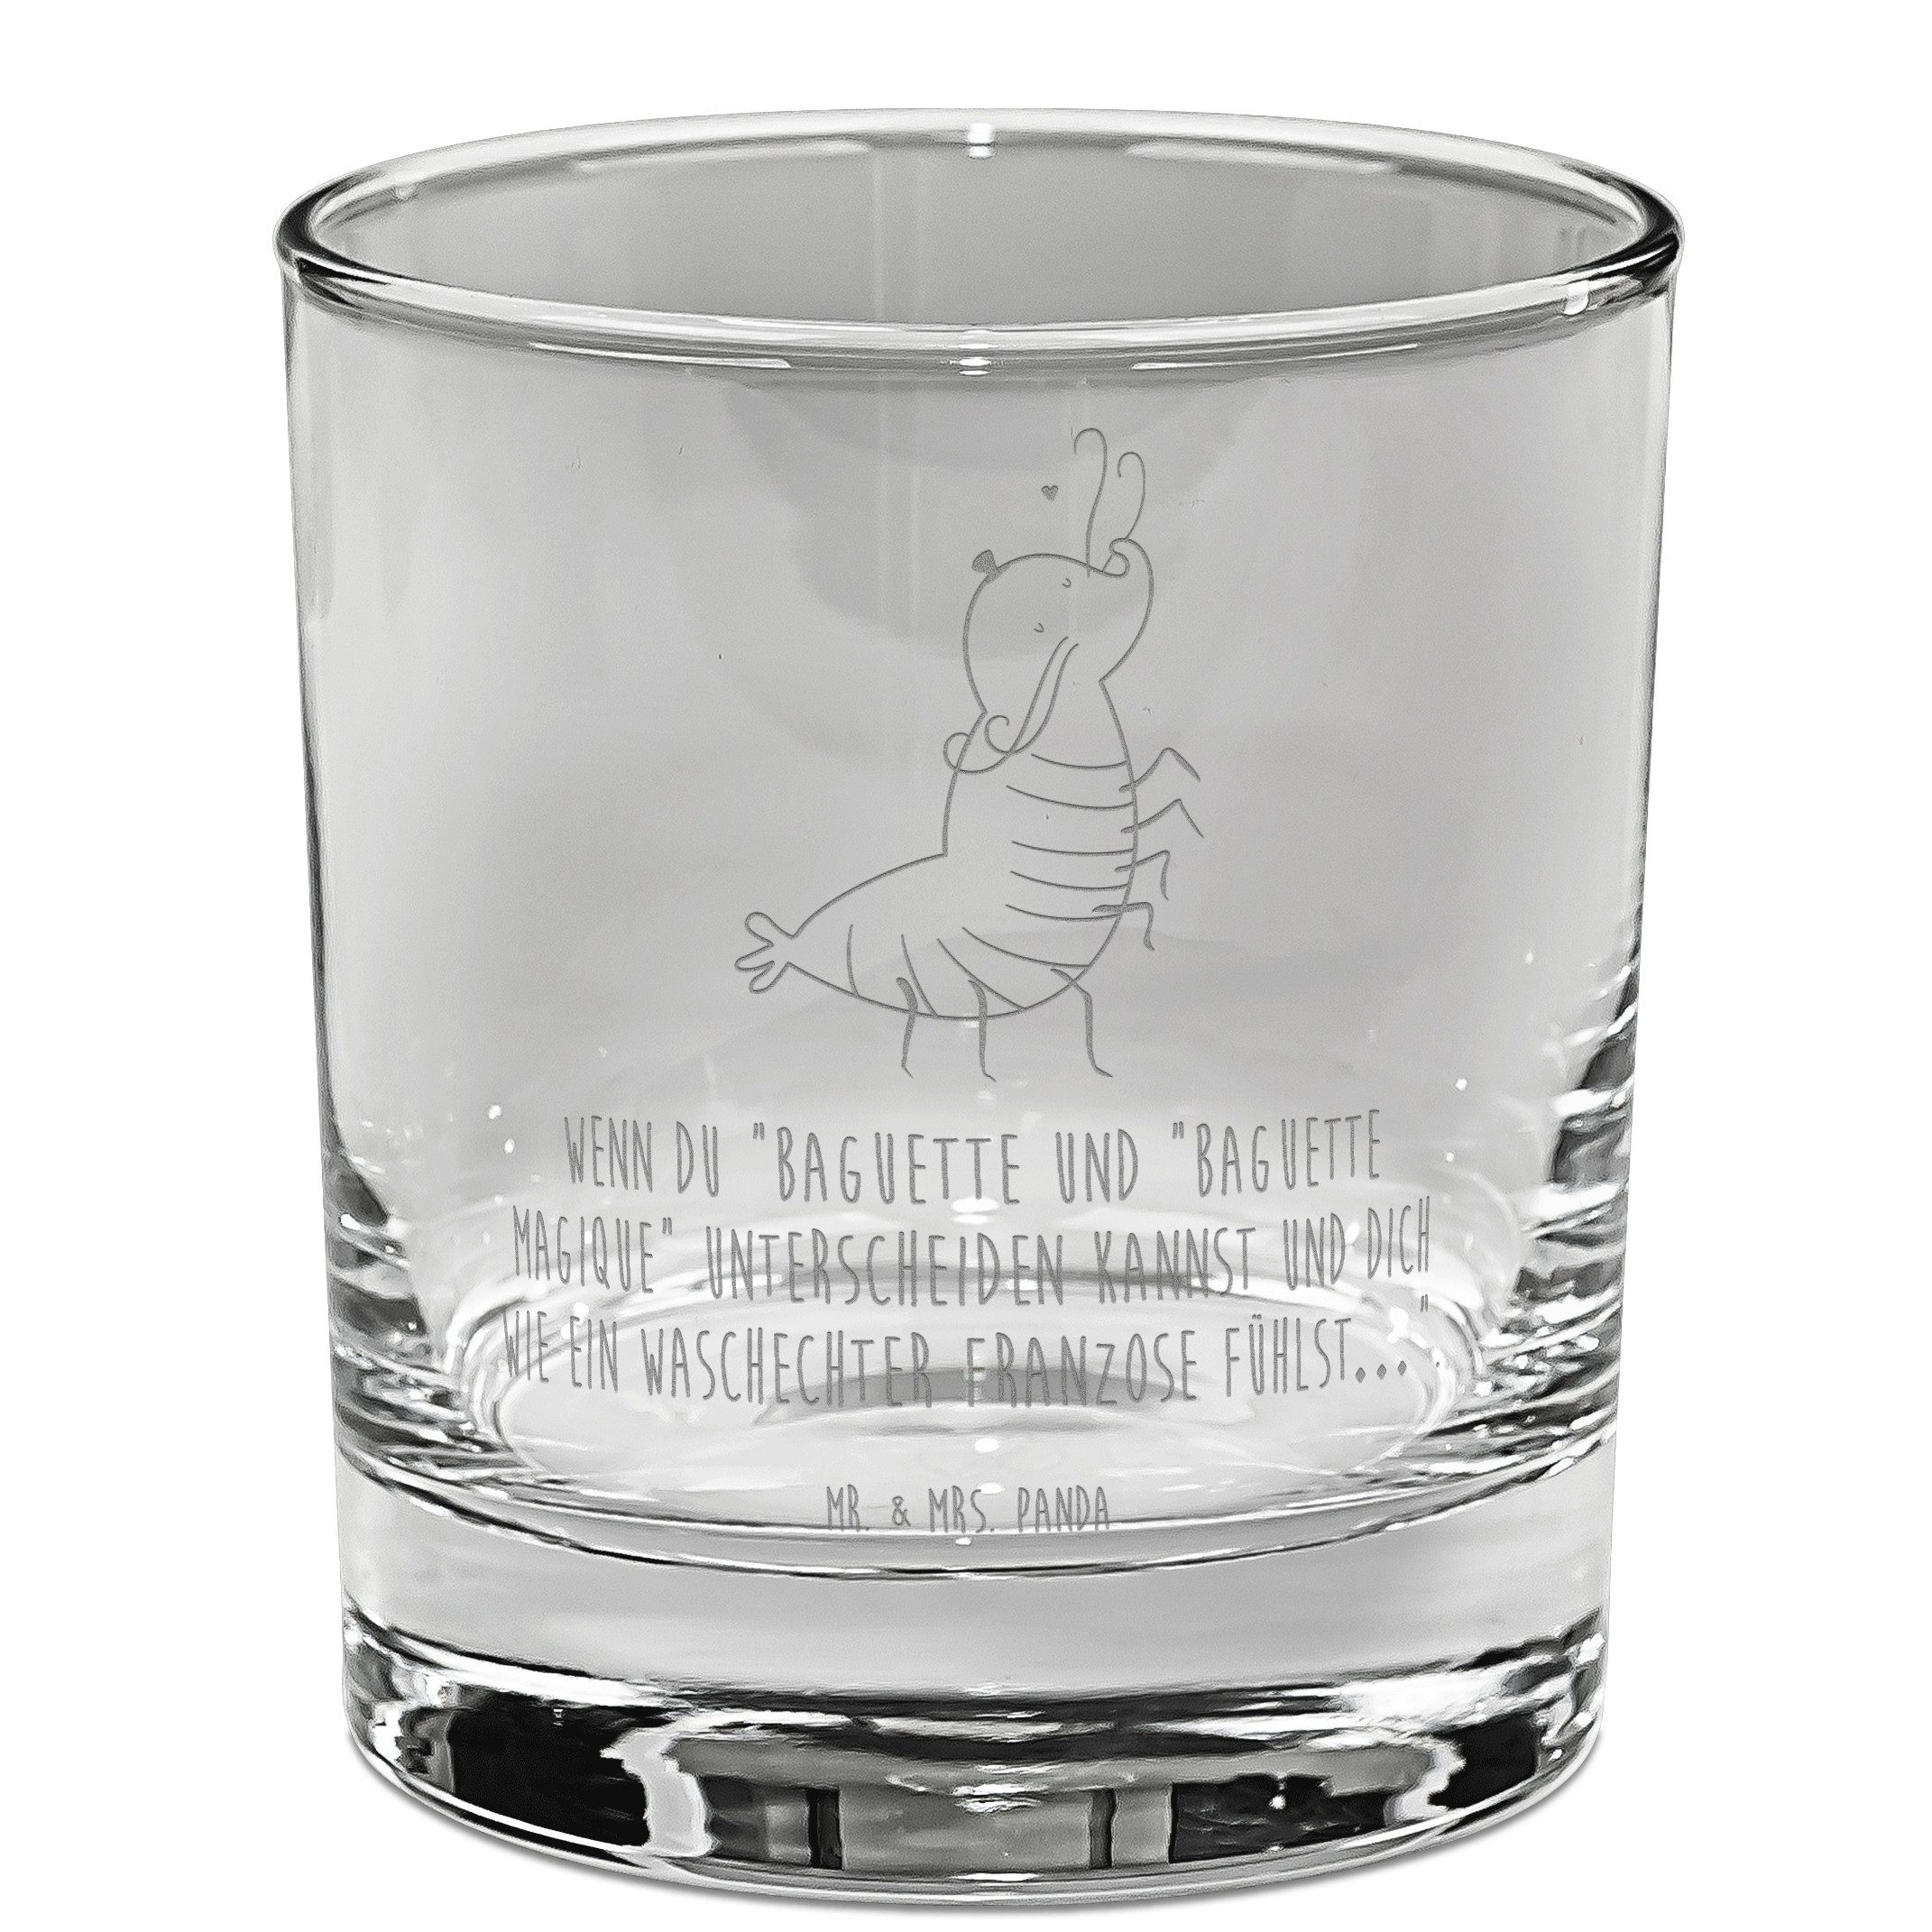 Mr. & Mrs. Panda Whiskyglas Garnele Franzose - Transparent - Geschenk, Krabbe, französisch, Meere, Premium Glas, Lasergravur Design